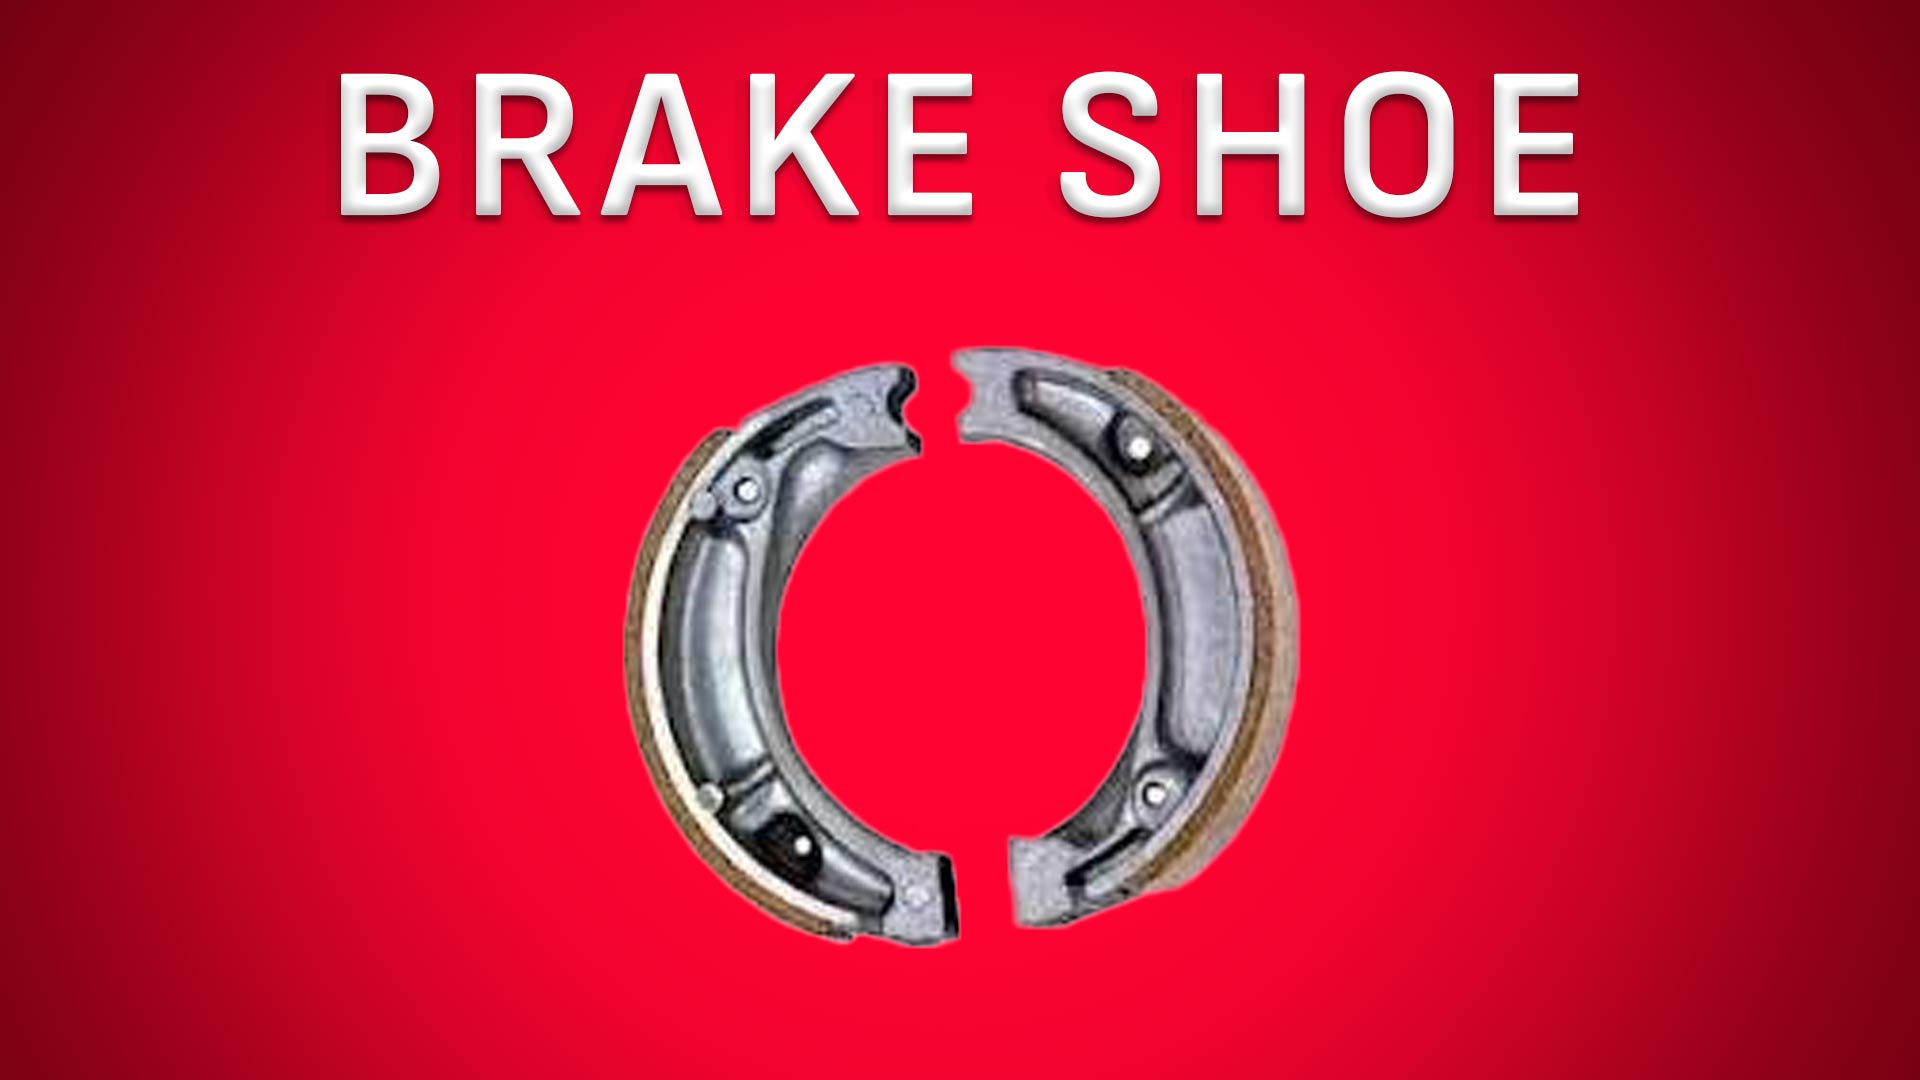 Brake Shoe